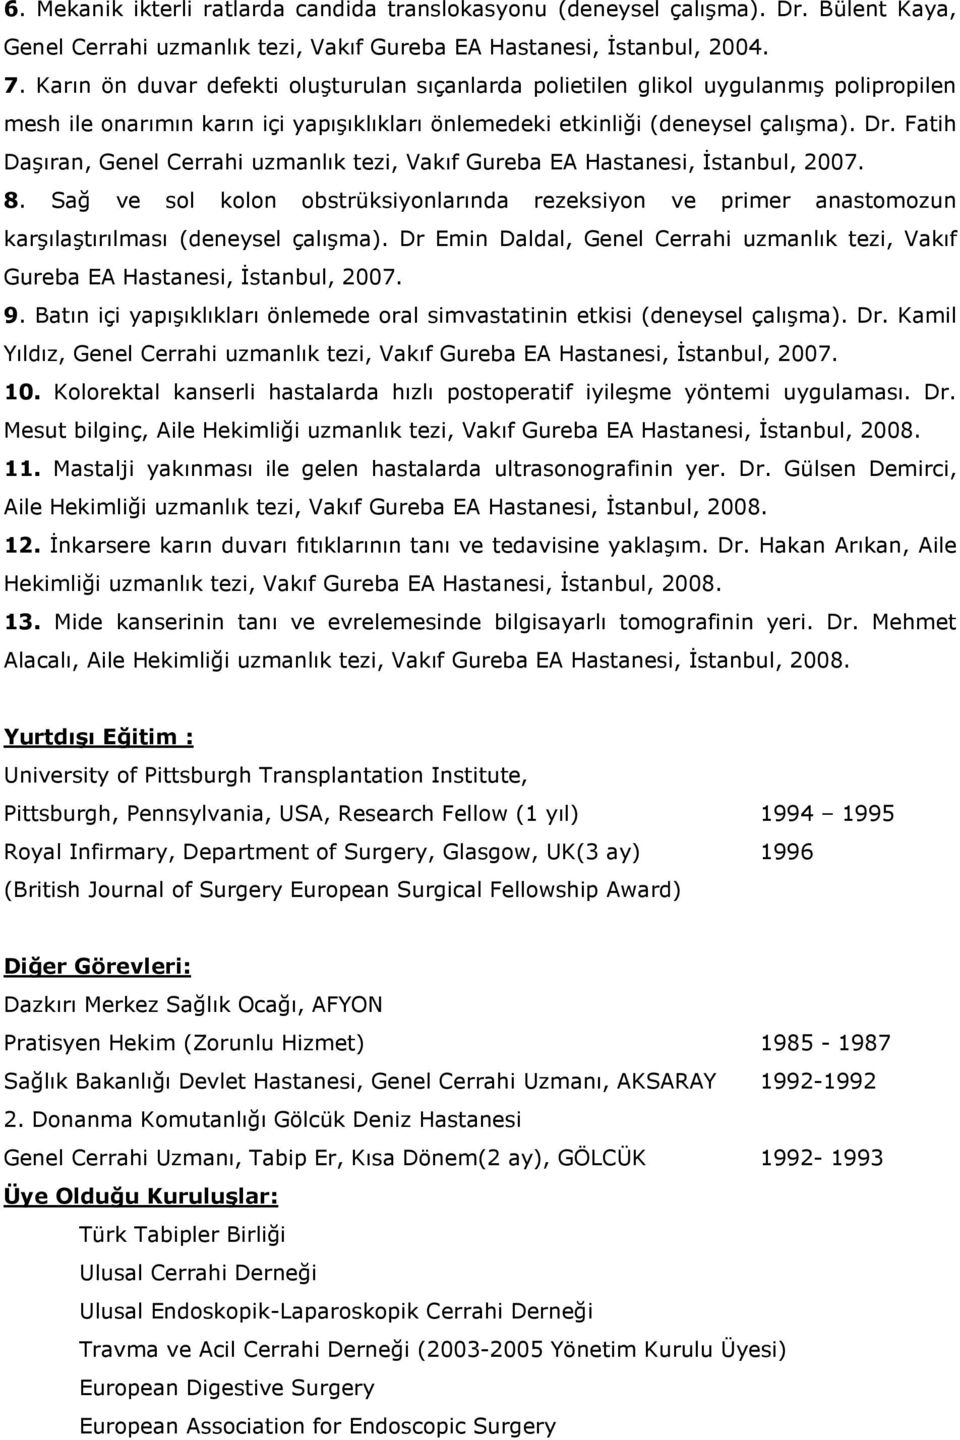 Fatih Daşıran, Genel Cerrahi uzmanlık tezi, Vakıf Gureba EA Hastanesi, Đstanbul, 2007. 8. Sağ ve sol kolon obstrüksiyonlarında rezeksiyon ve primer anastomozun karşılaştırılması (deneysel çalışma).